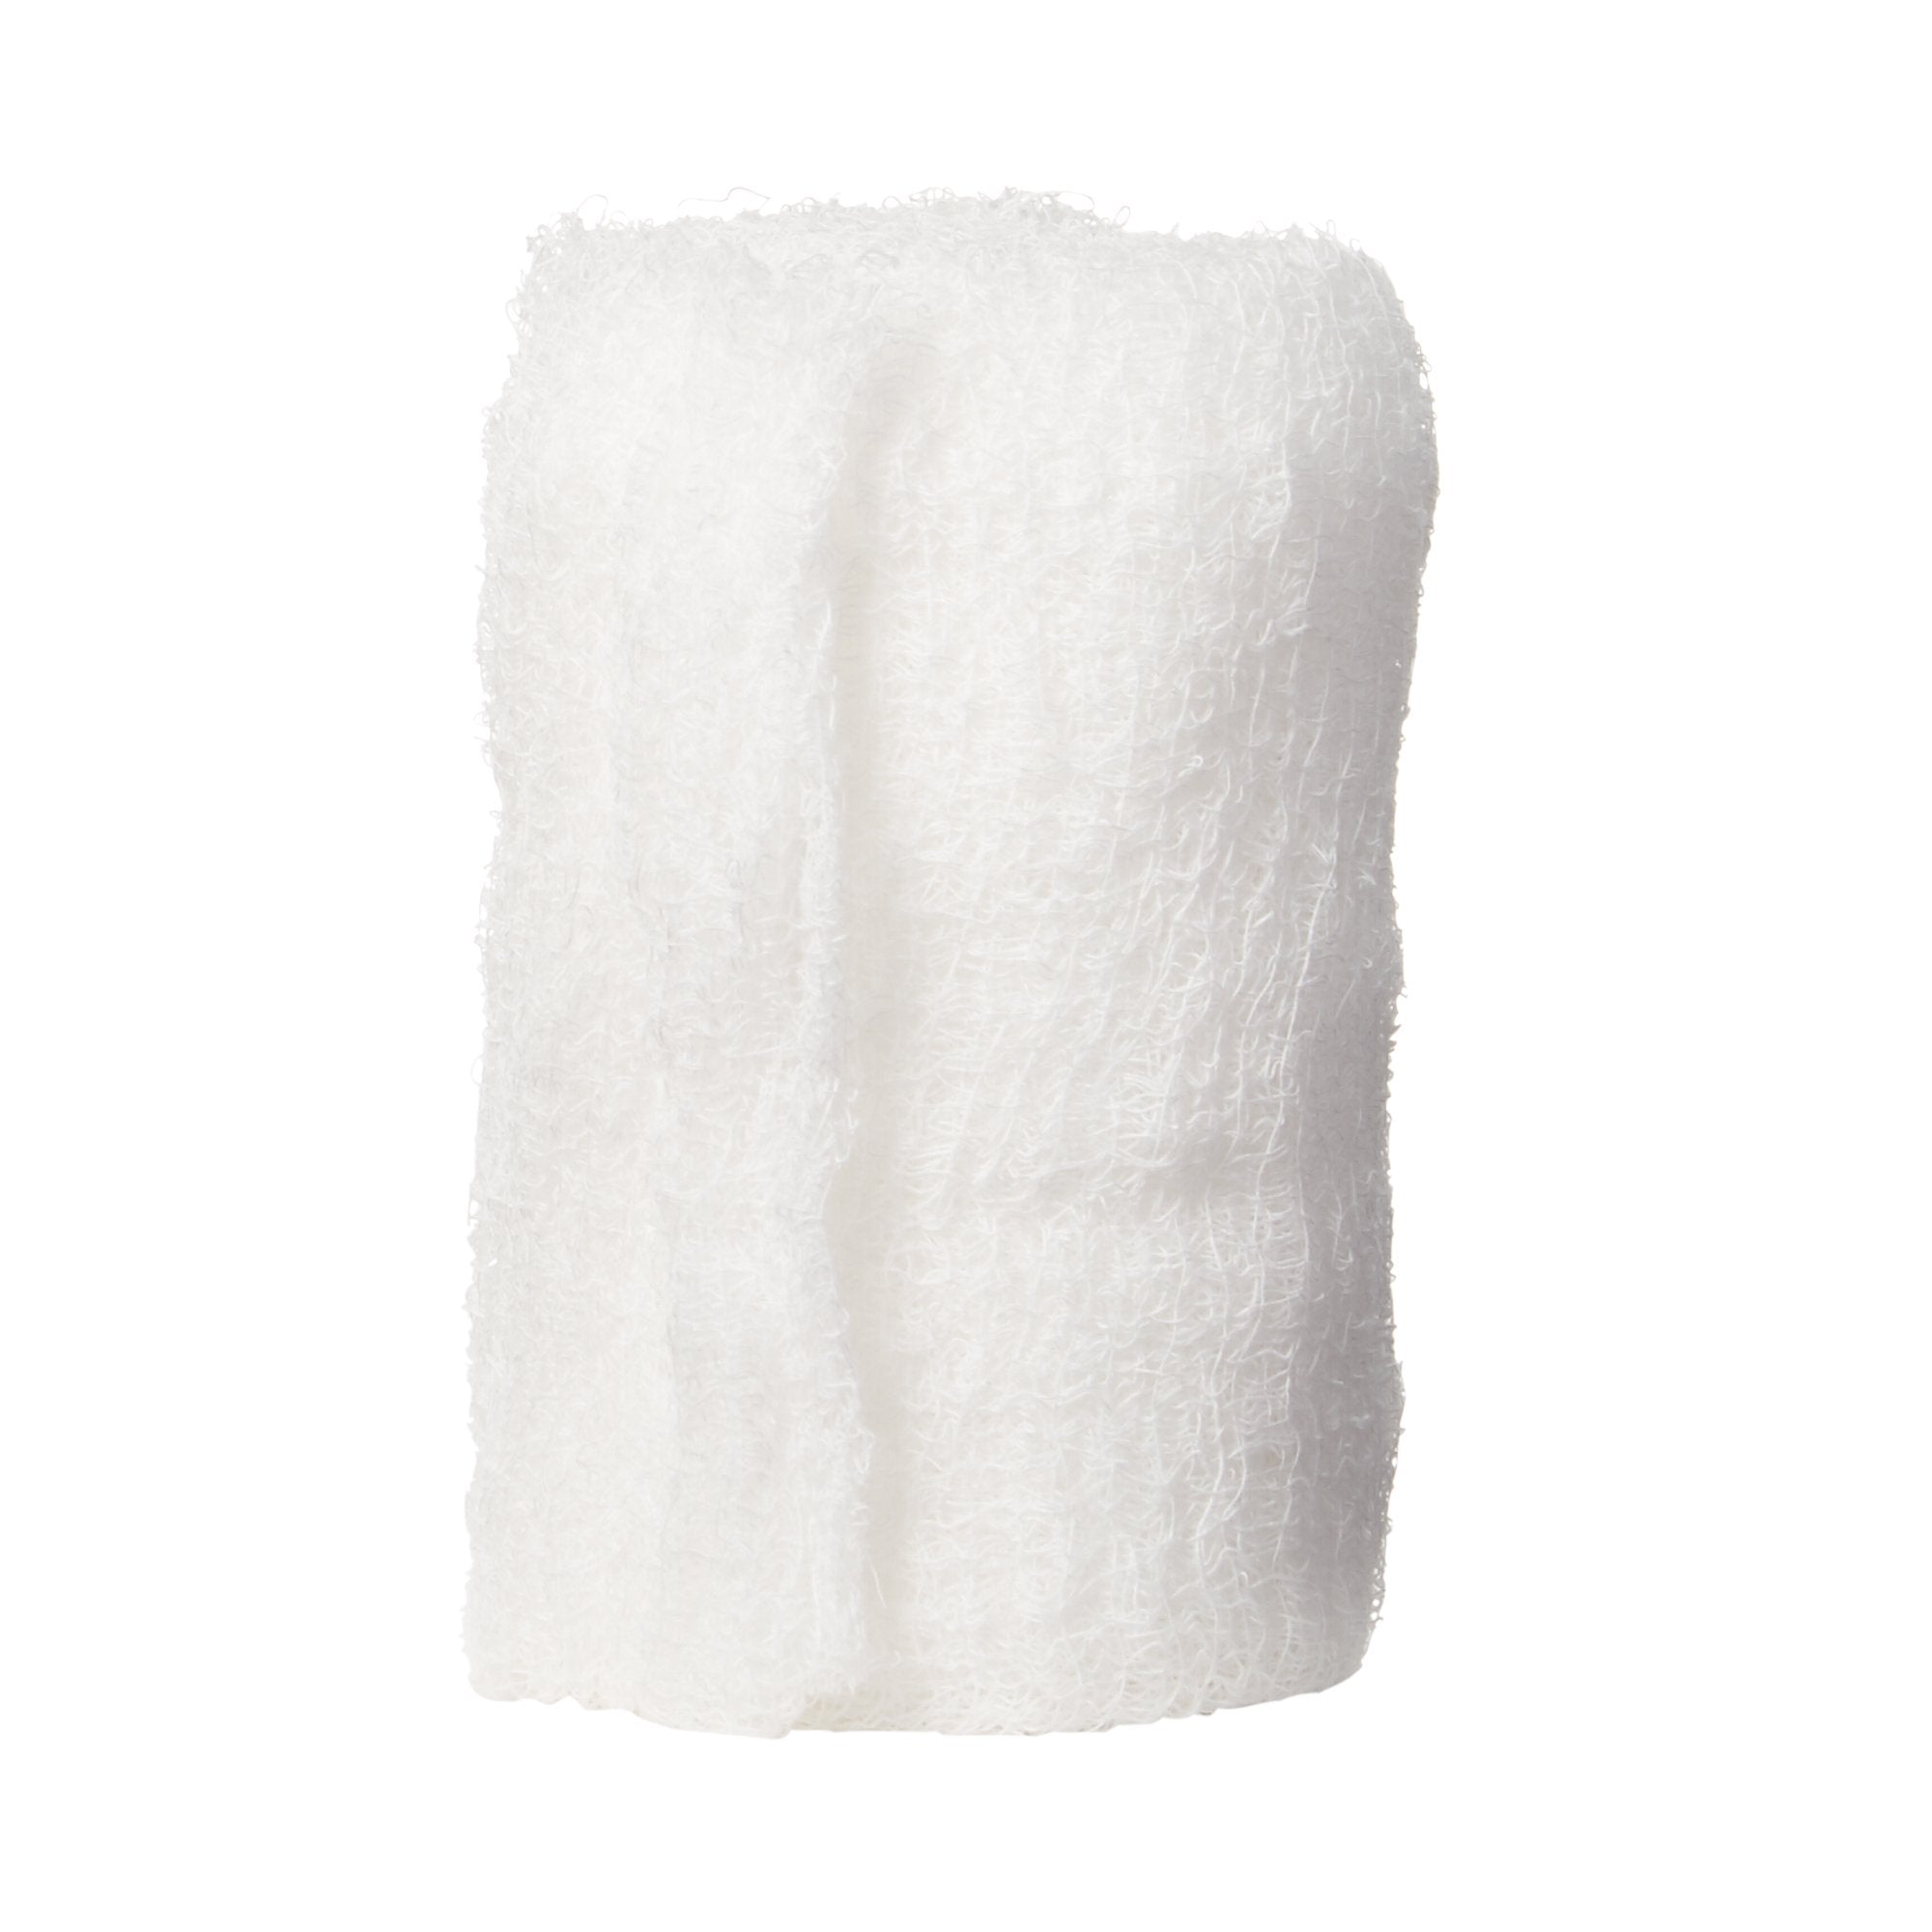 Fluff Bandage Roll McKesson 4-1/2 Inch X 4-1/10 Yard 100 per Case NonSterile 6-Ply Roll Shape